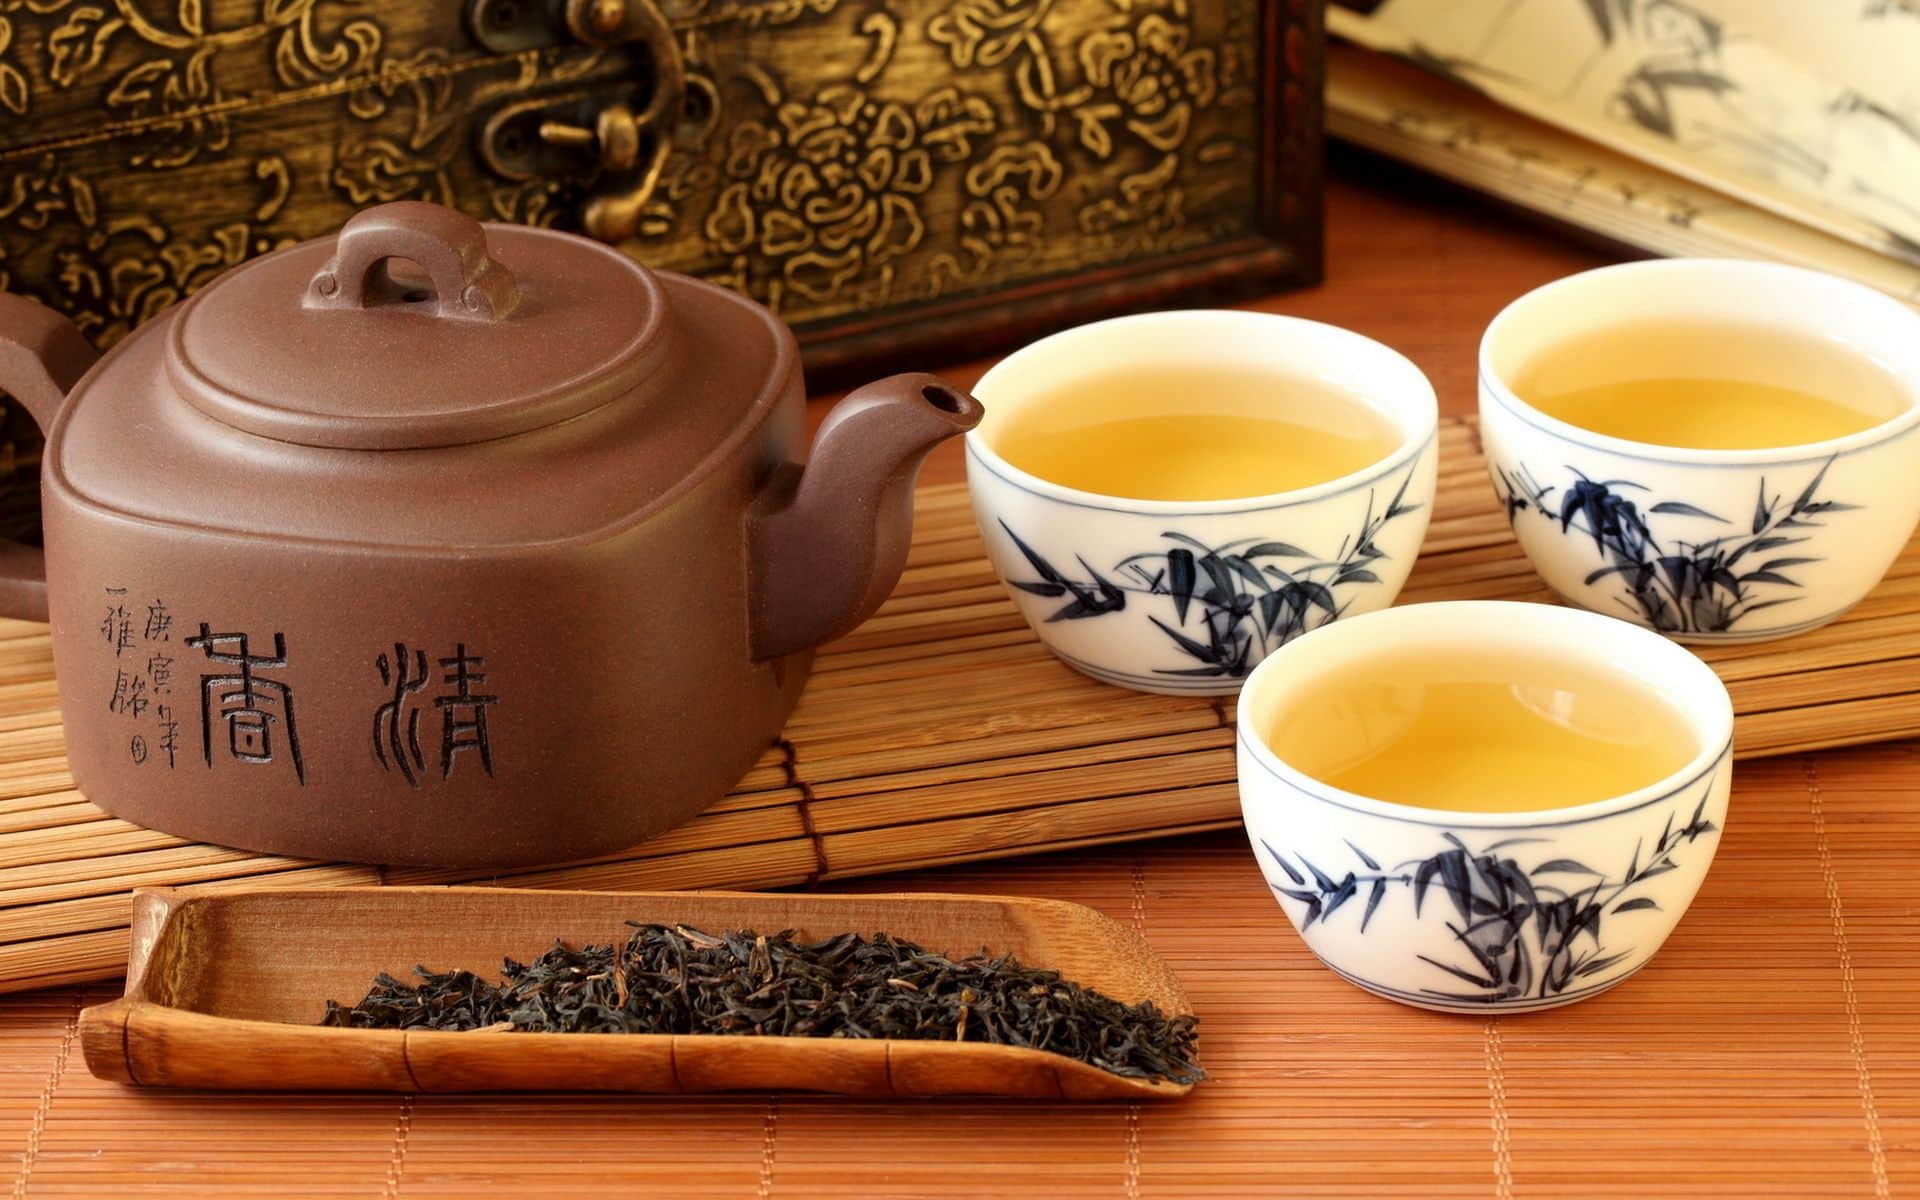 Çay da yine doğudan köken alan bir içecektir ve kökeni çok daha eskilere dayanmaktadır